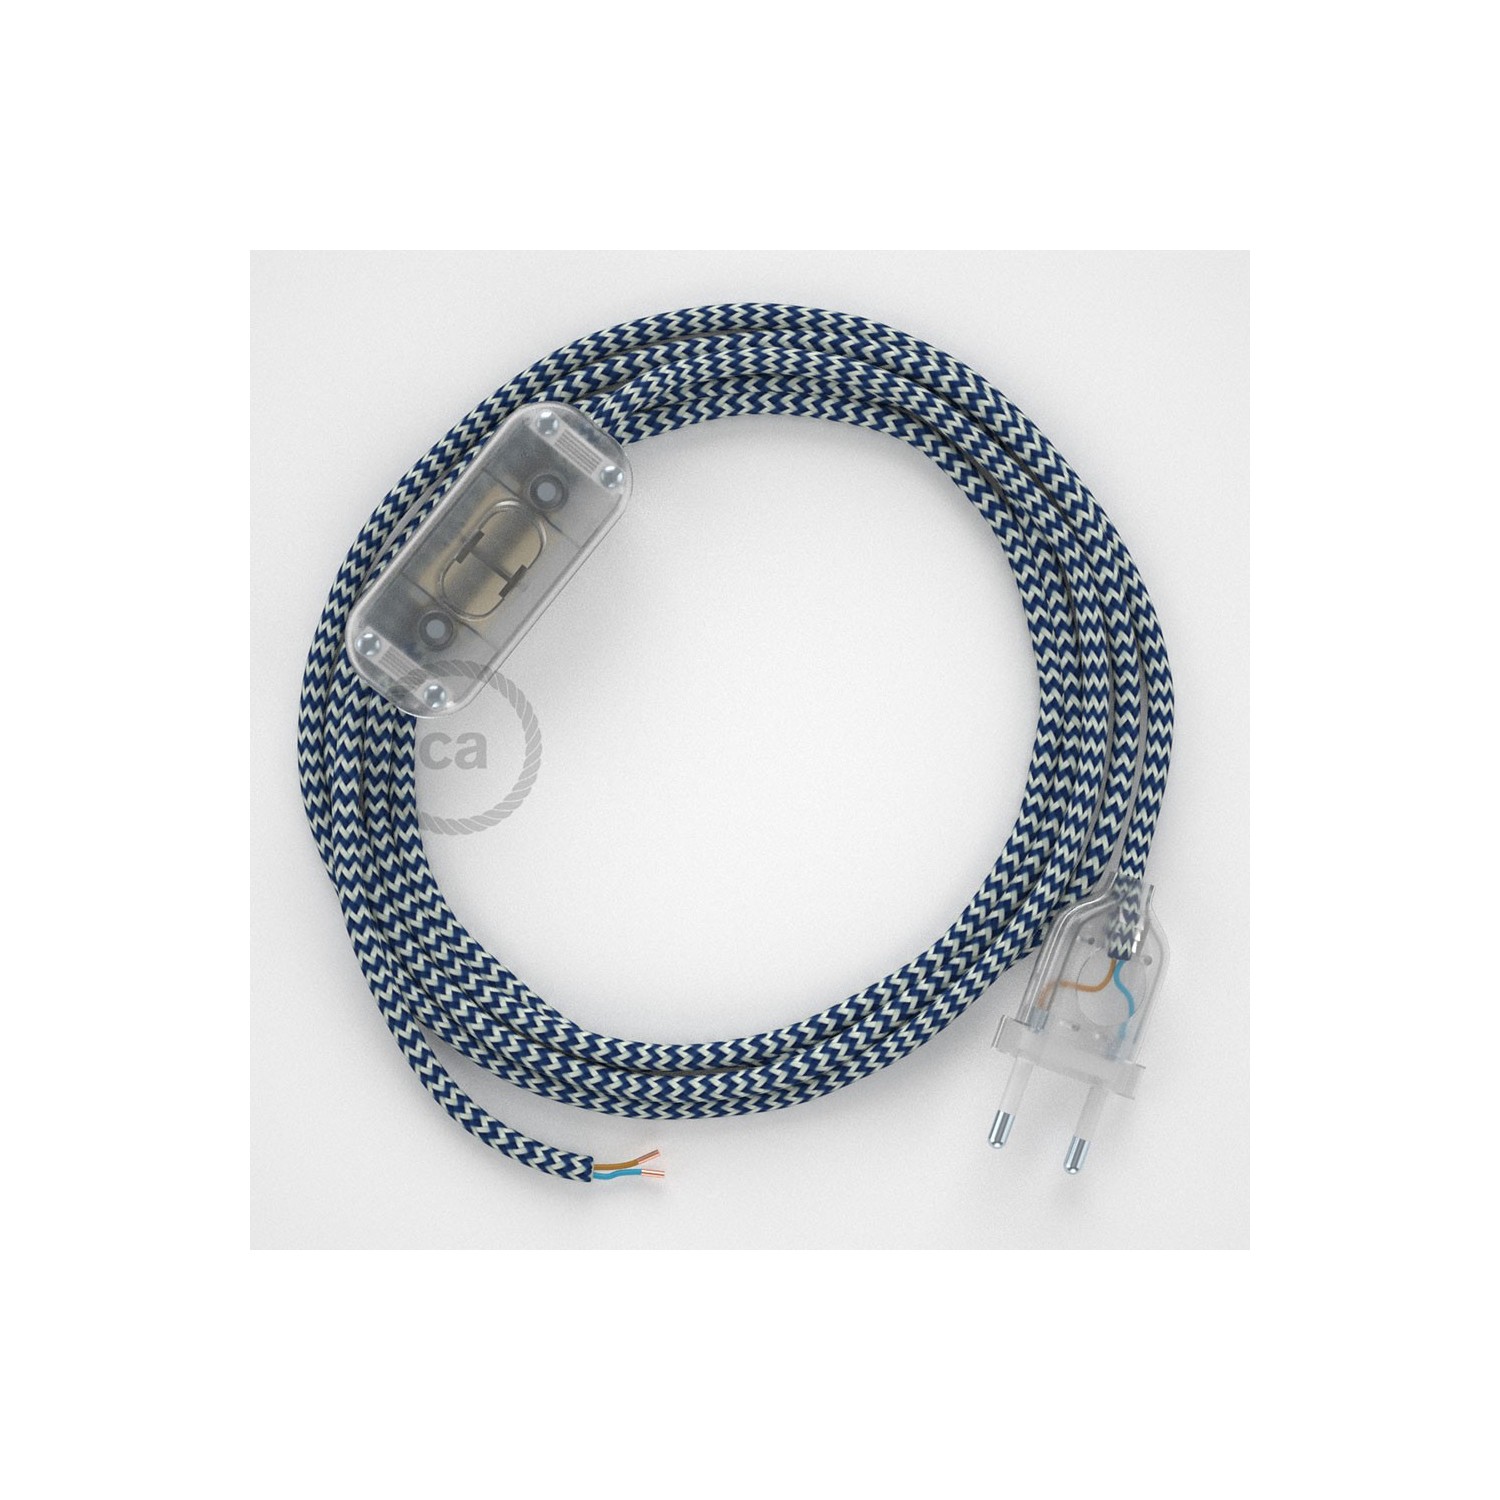 Cablaggio per lampada, cavo RZ12 Effetto Seta ZigZag Blu 1,80 m. Scegli il colore dell'interruttore e della spina.